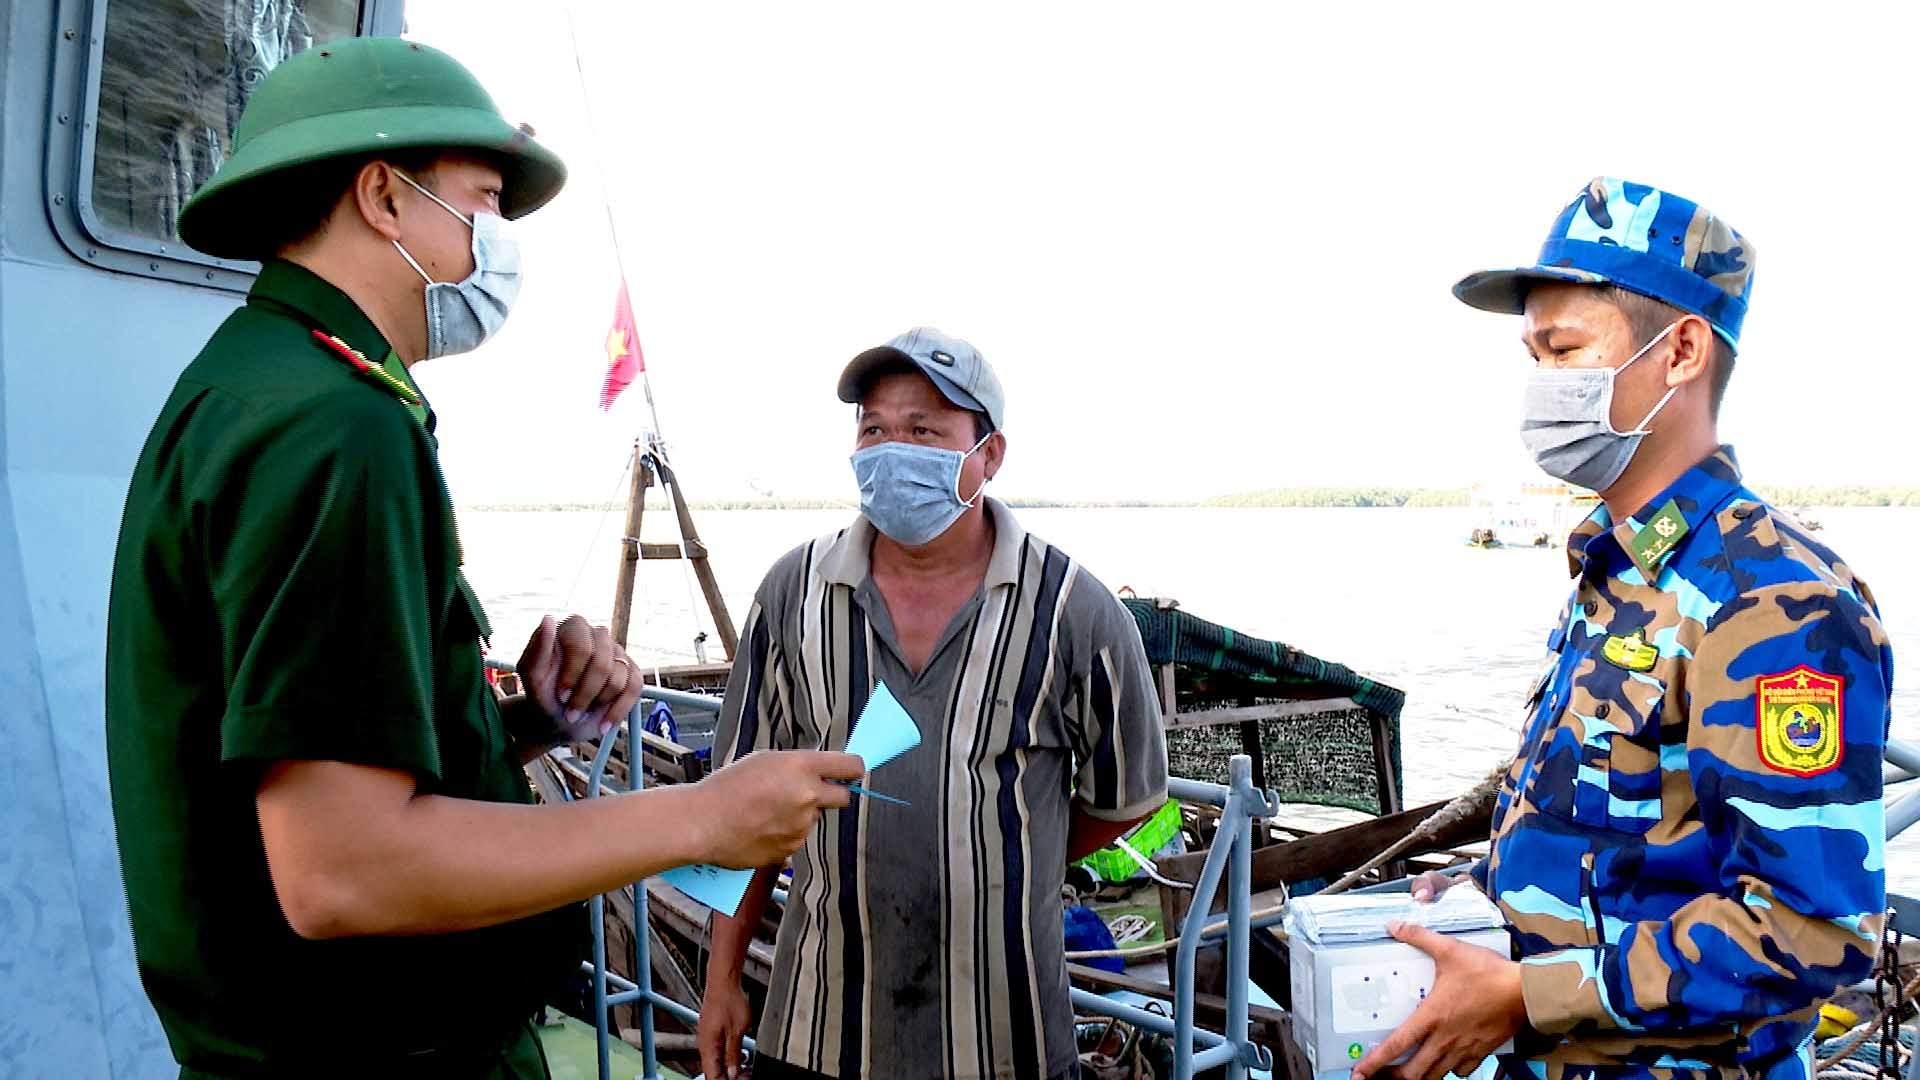 BĐBP Sóc Trăng phát tờ rơi tuyên truyền cho ngư dân về các quy định chống khai thác hải sản bất hợp pháp. (Ảnh: Văn Long-Chiến Khu)